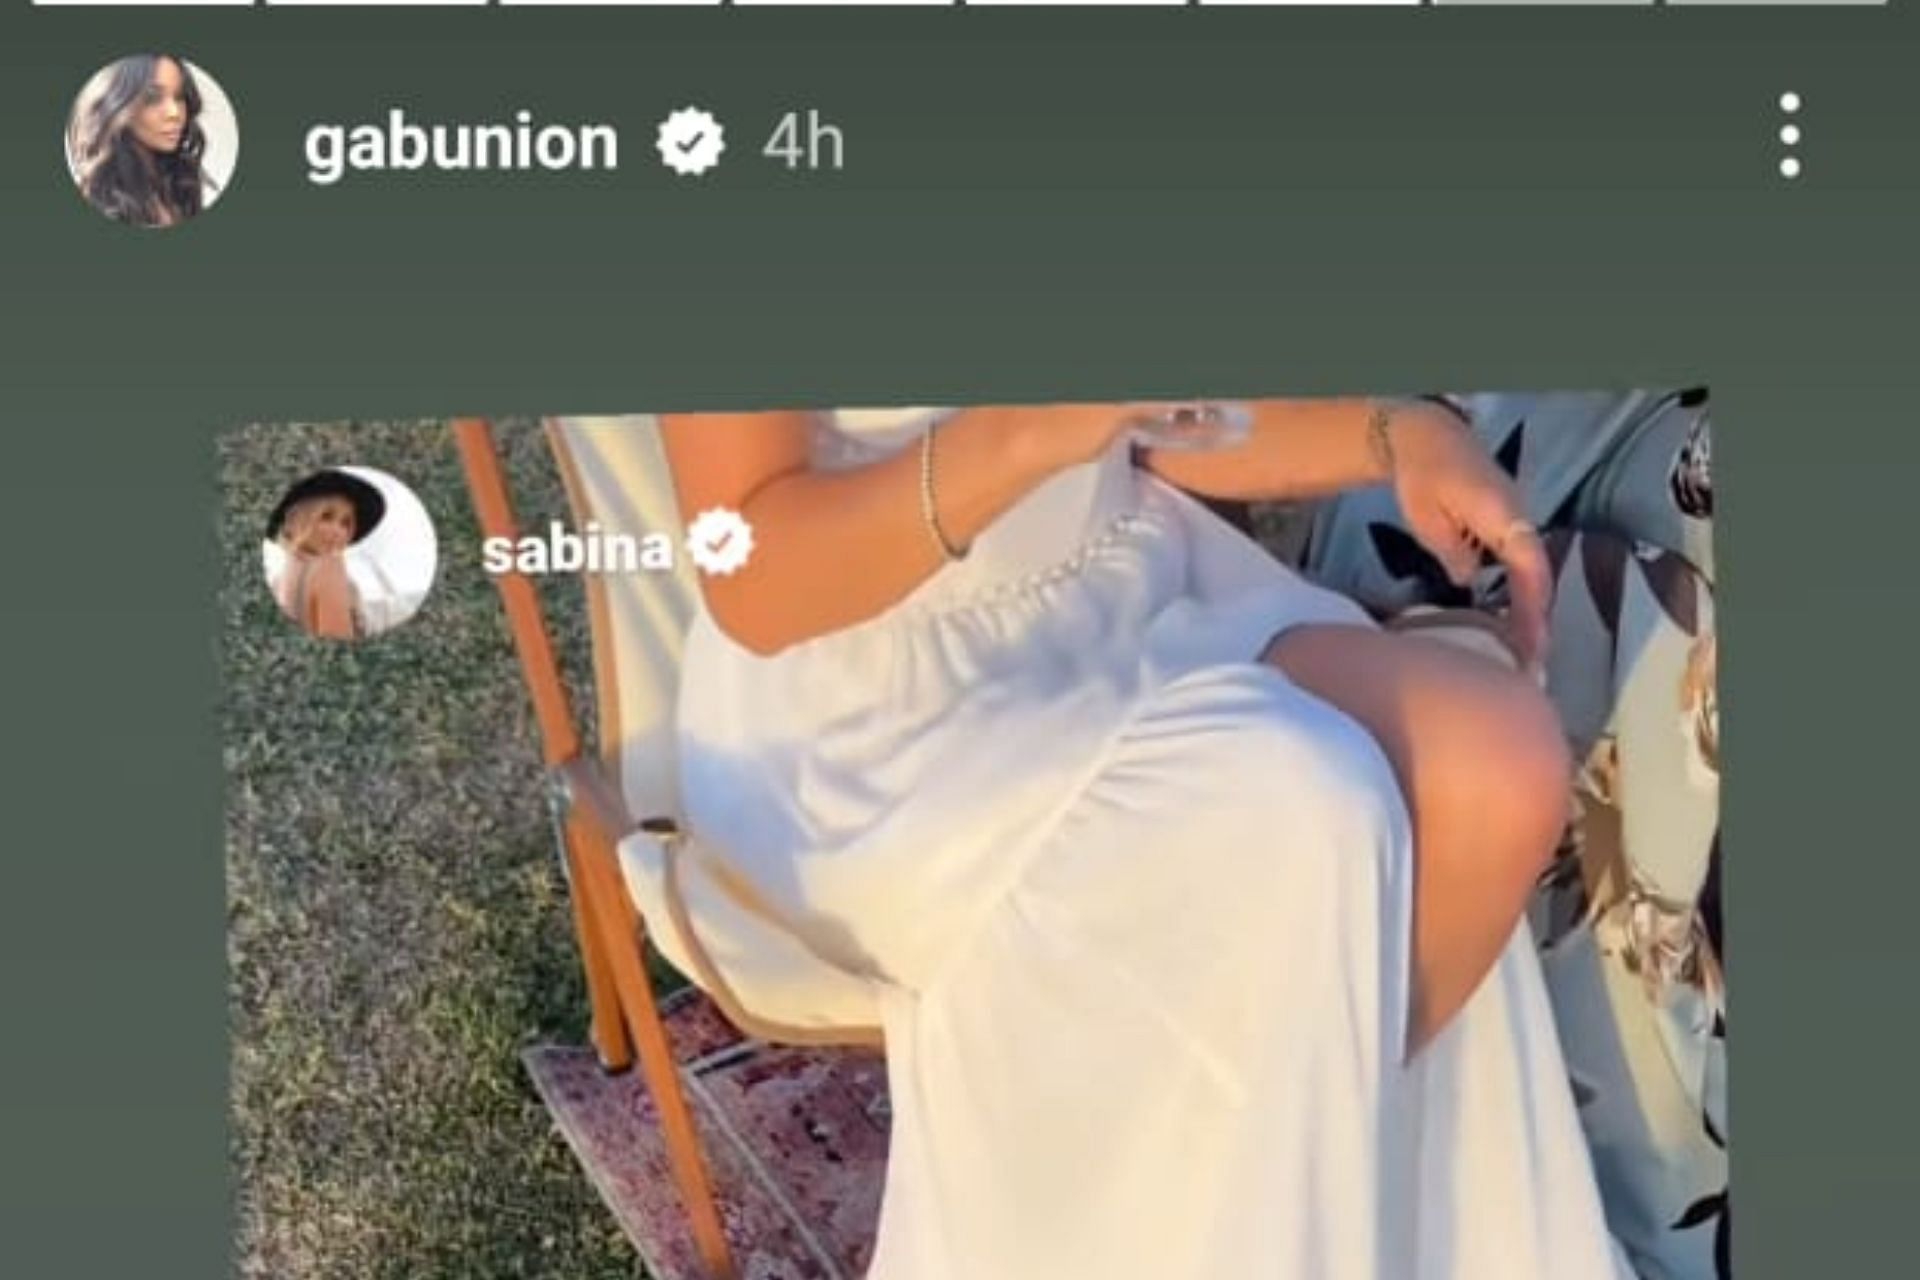 Gabrielle Union on Instagram / IG: @gabunion